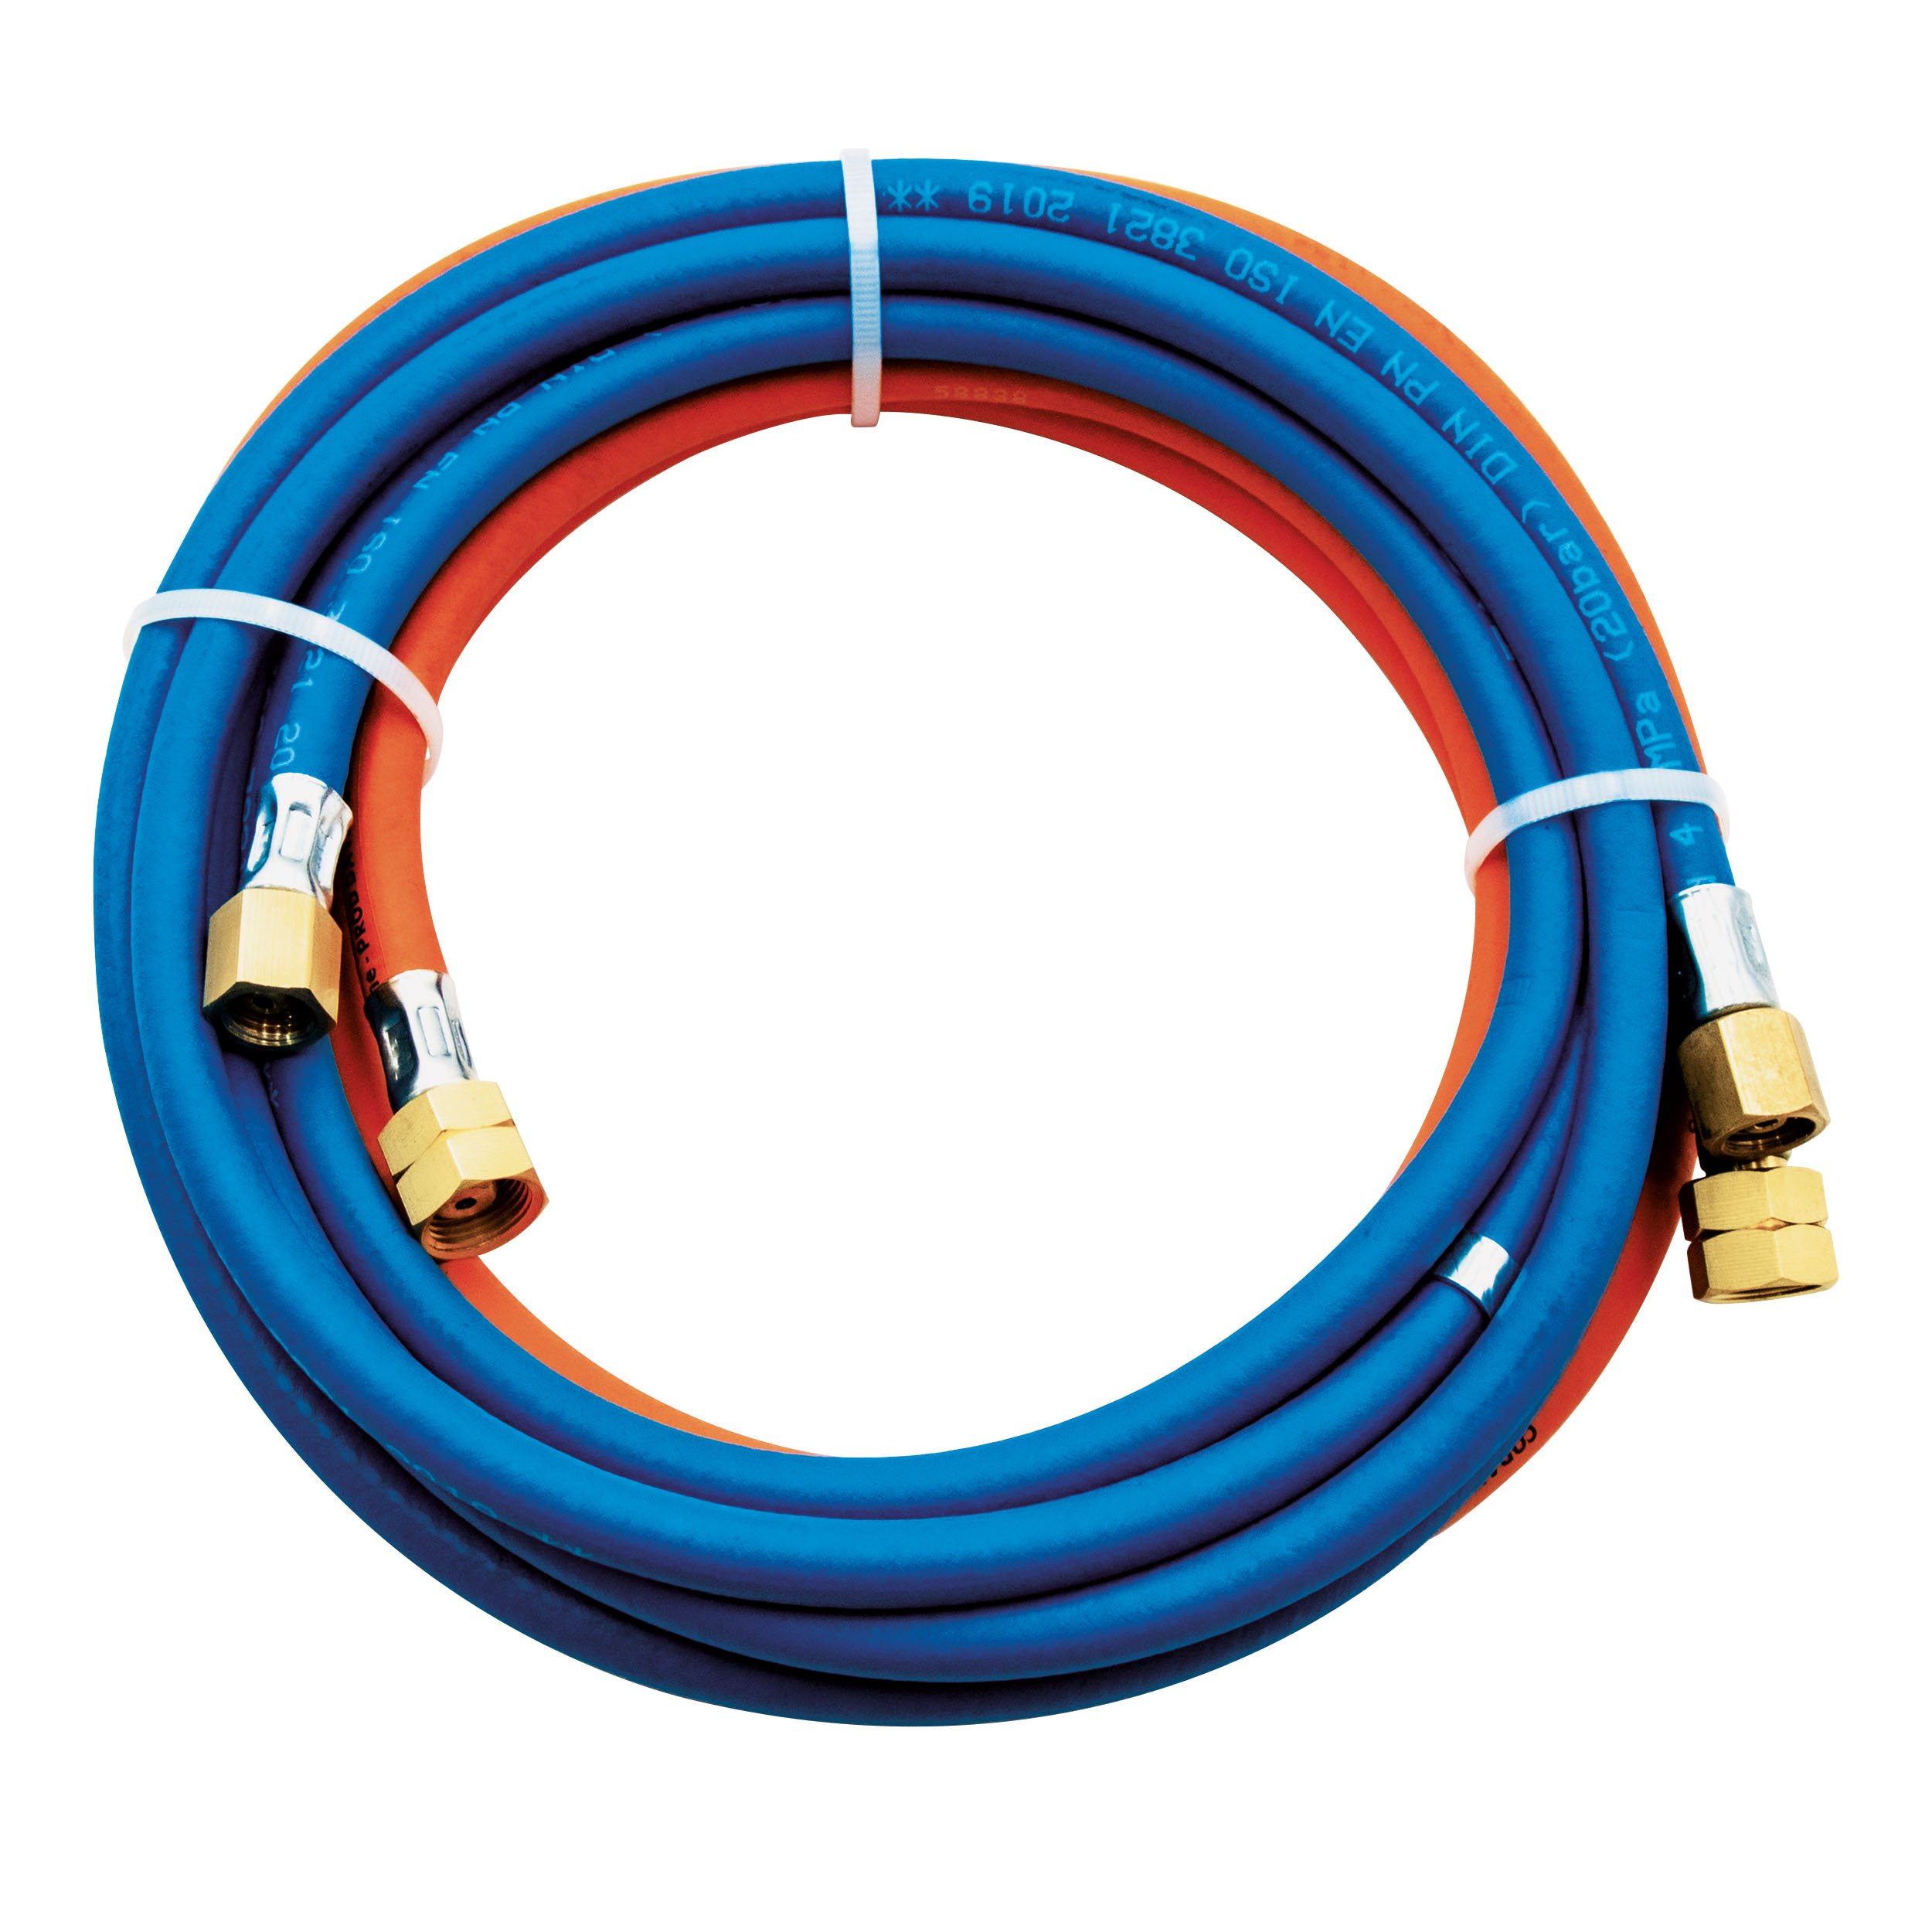 Double hose oxygen + propane 1x6.3x3.5 + 1x6.3x3.5 5m length connection